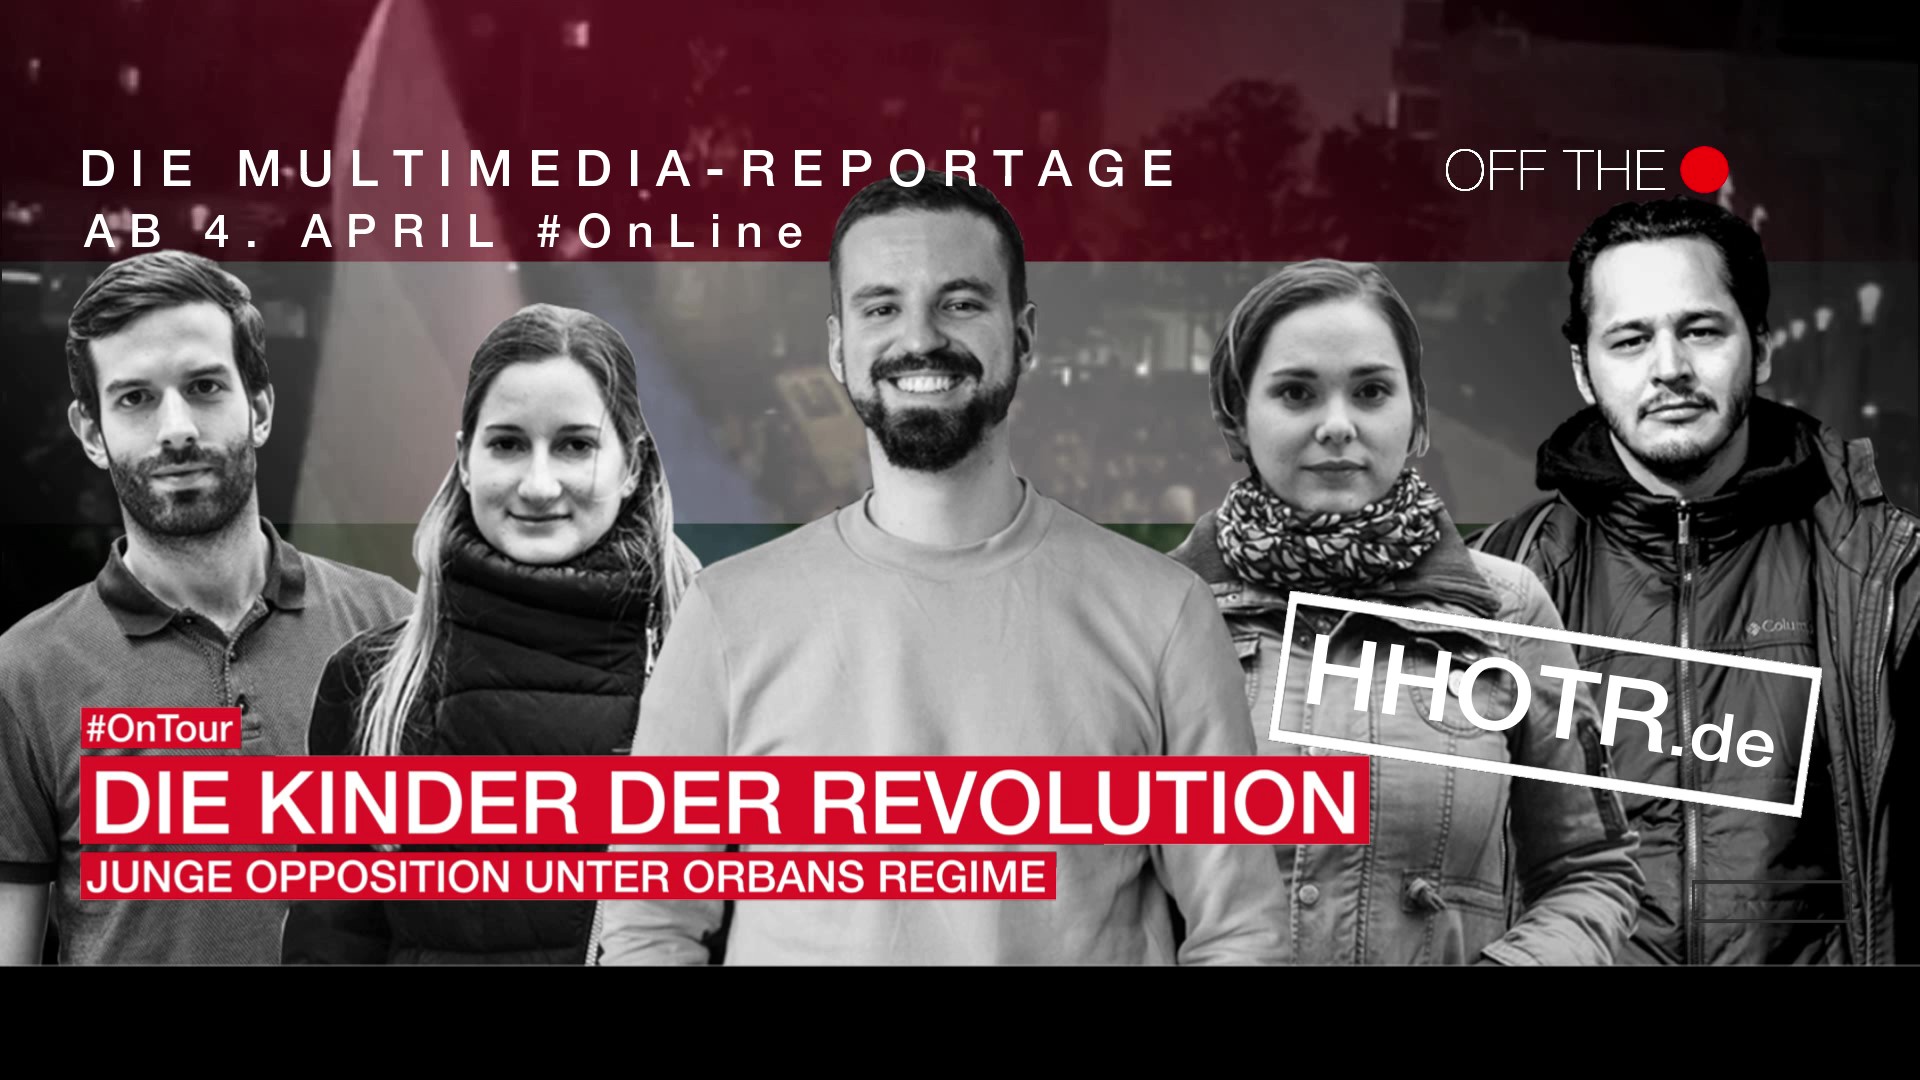 Die Kinder der Revolution. Junge Opposition unter Orbans Regime Scrollytelling Off The Record OnTour wahlen ungarn